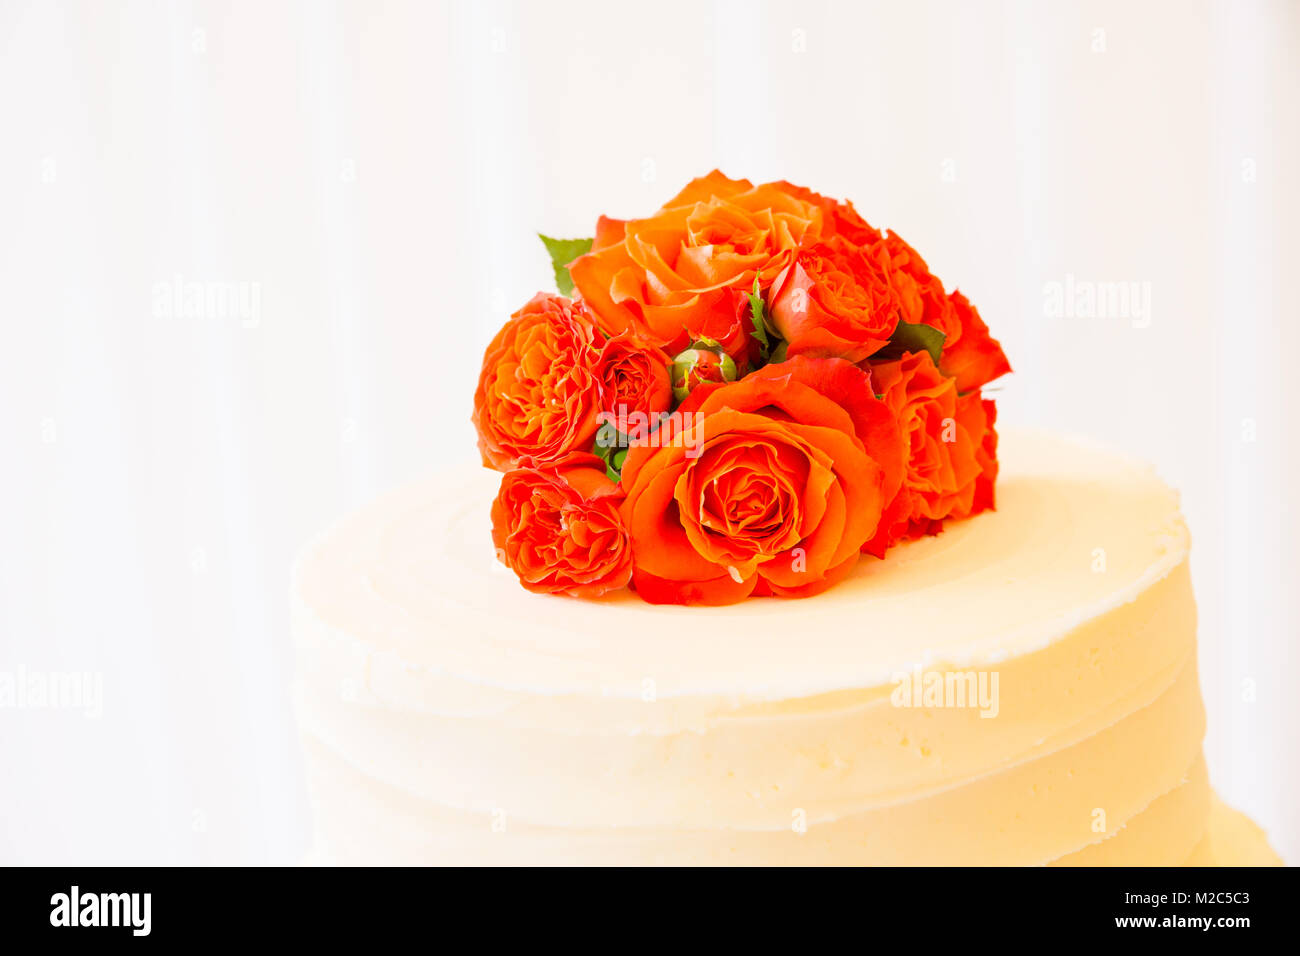 Roses orange sur le dessus du gâteau de célébration, close-up Banque D'Images